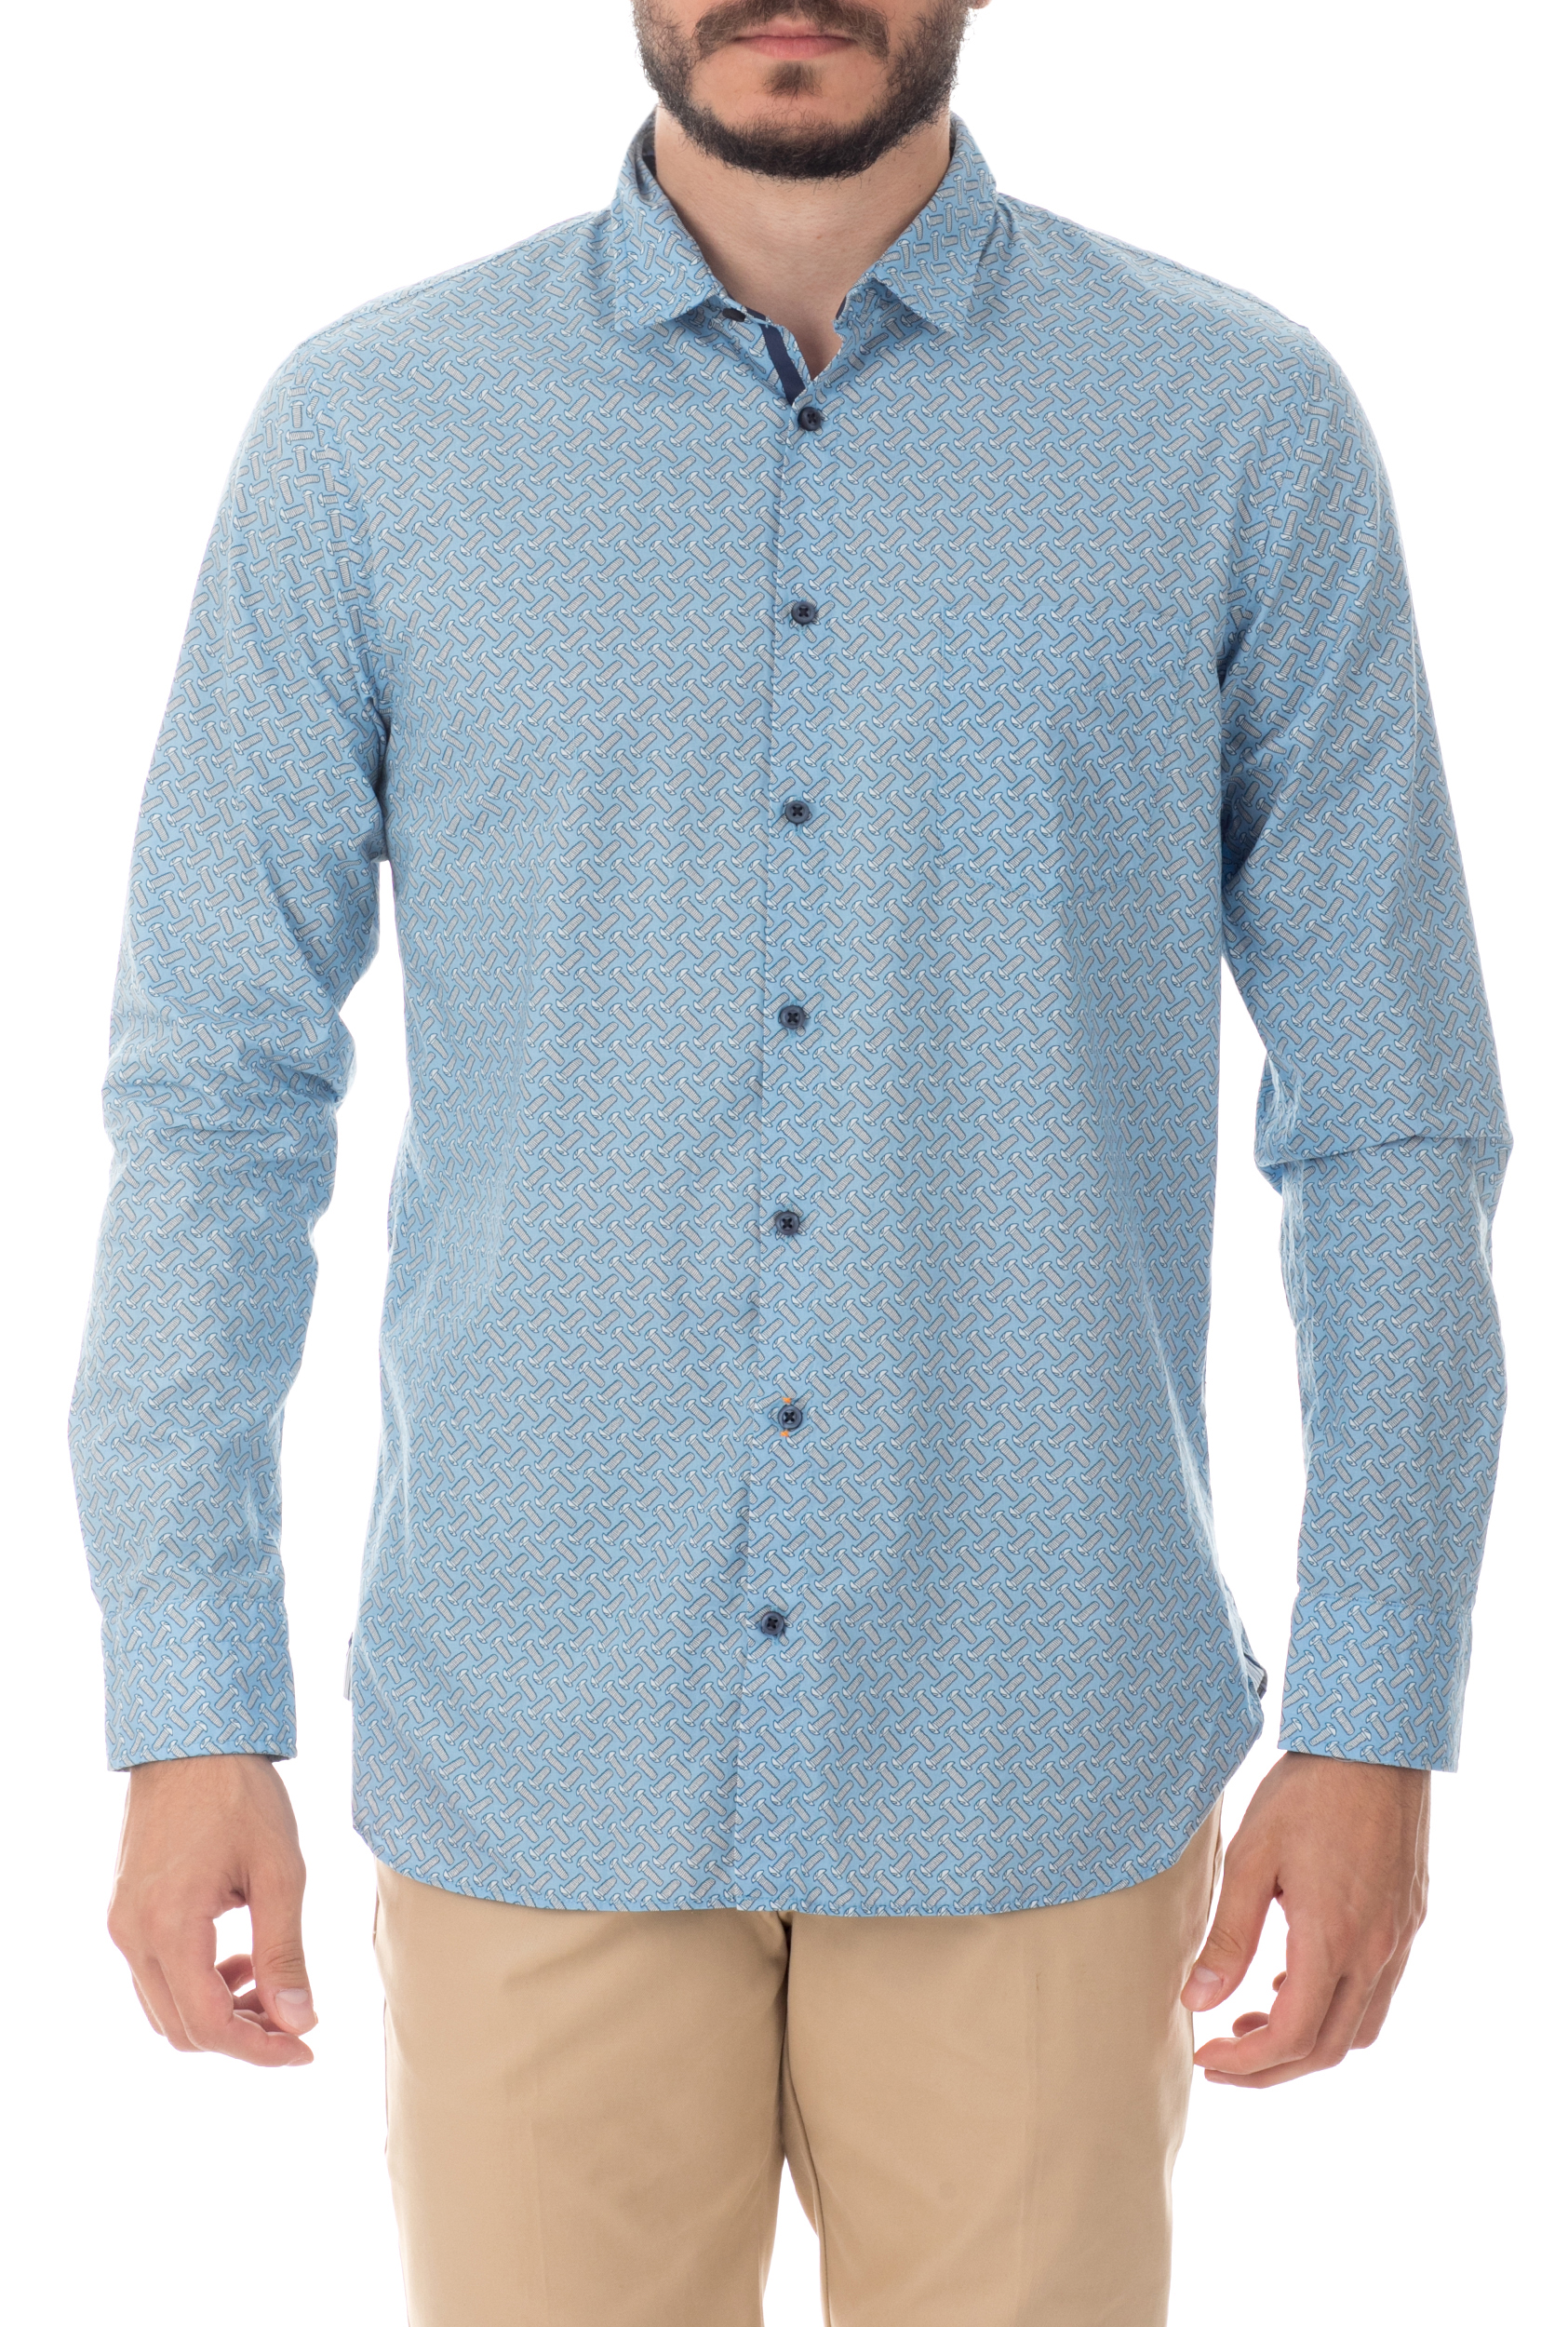 Ανδρικά/Ρούχα/Πουκάμισα/Μακρυμάνικα BOSS ORANGE - Ανδρικό μακρυμάνικο πουκάμισο BOSS ORANGE μπλε